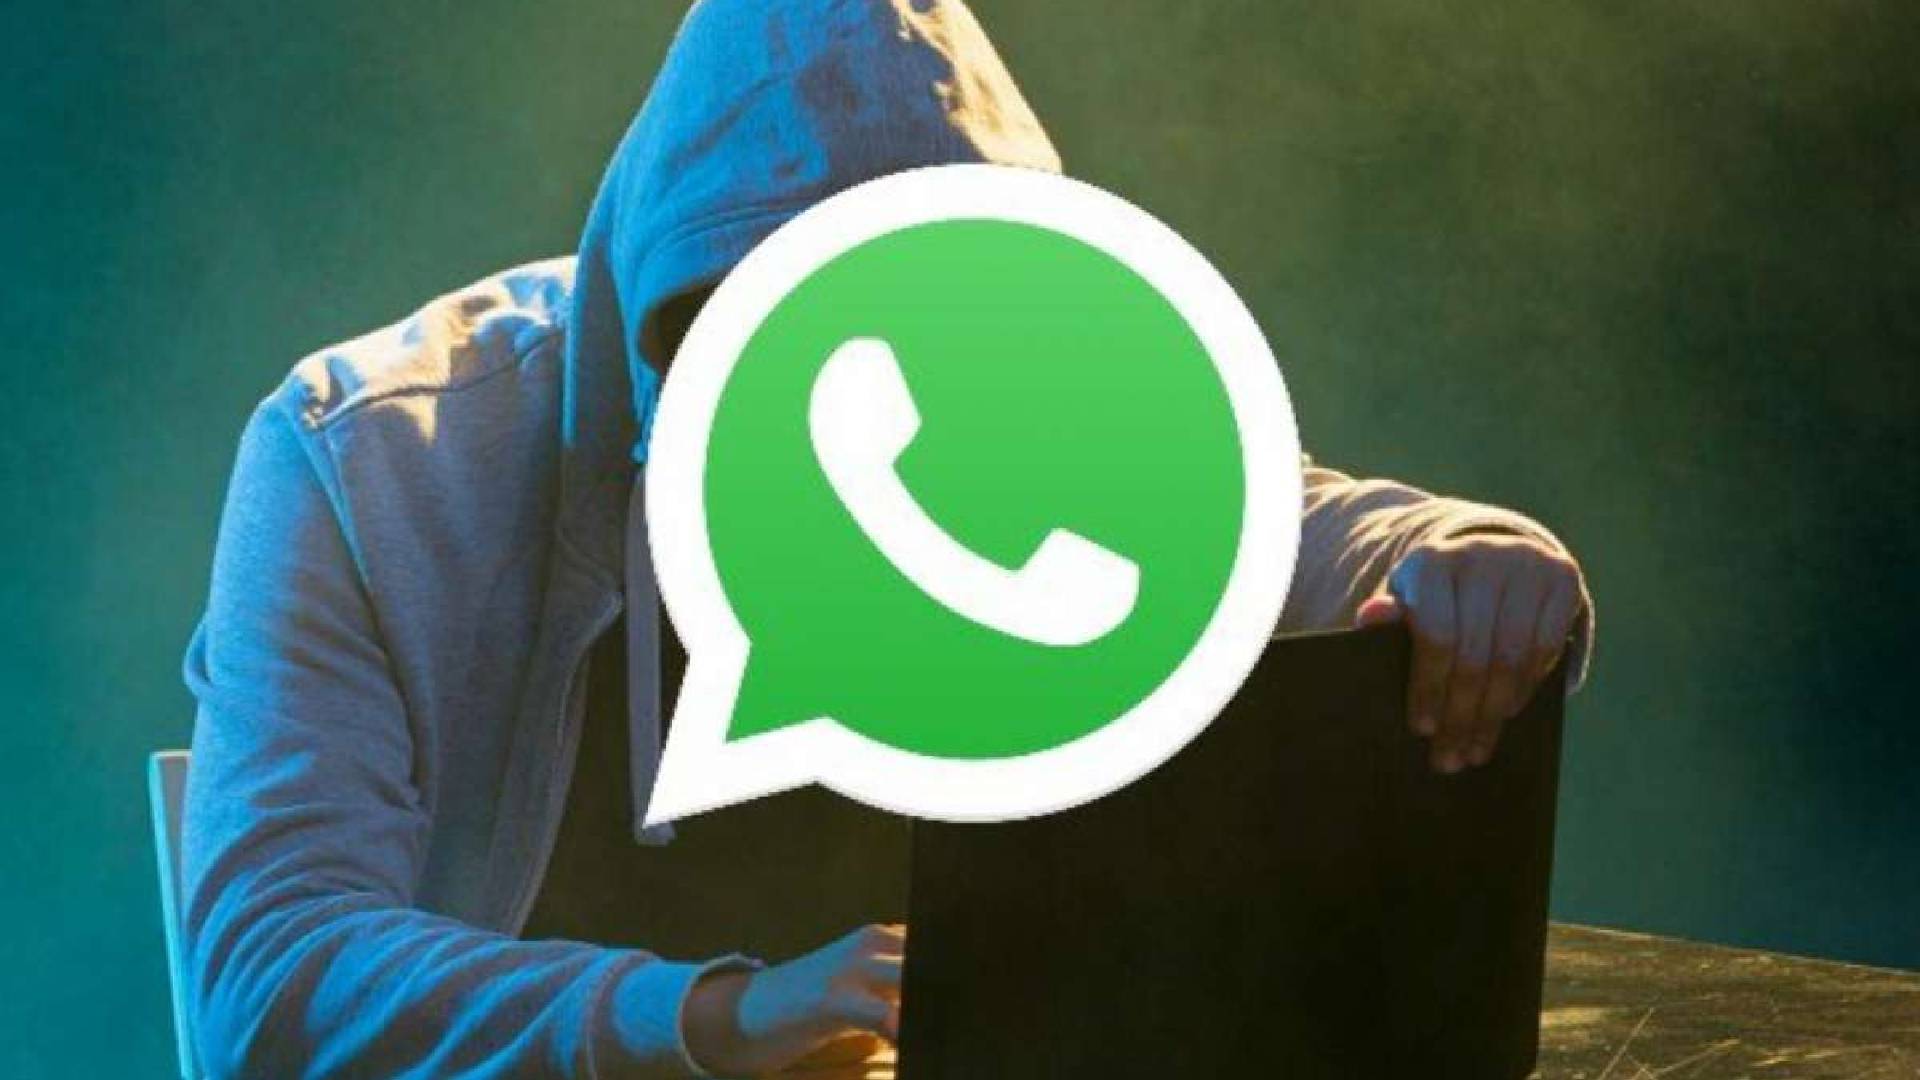 Táctica Emergente: Estafas en WhatsApp utilizando números de teléfono extranjeros